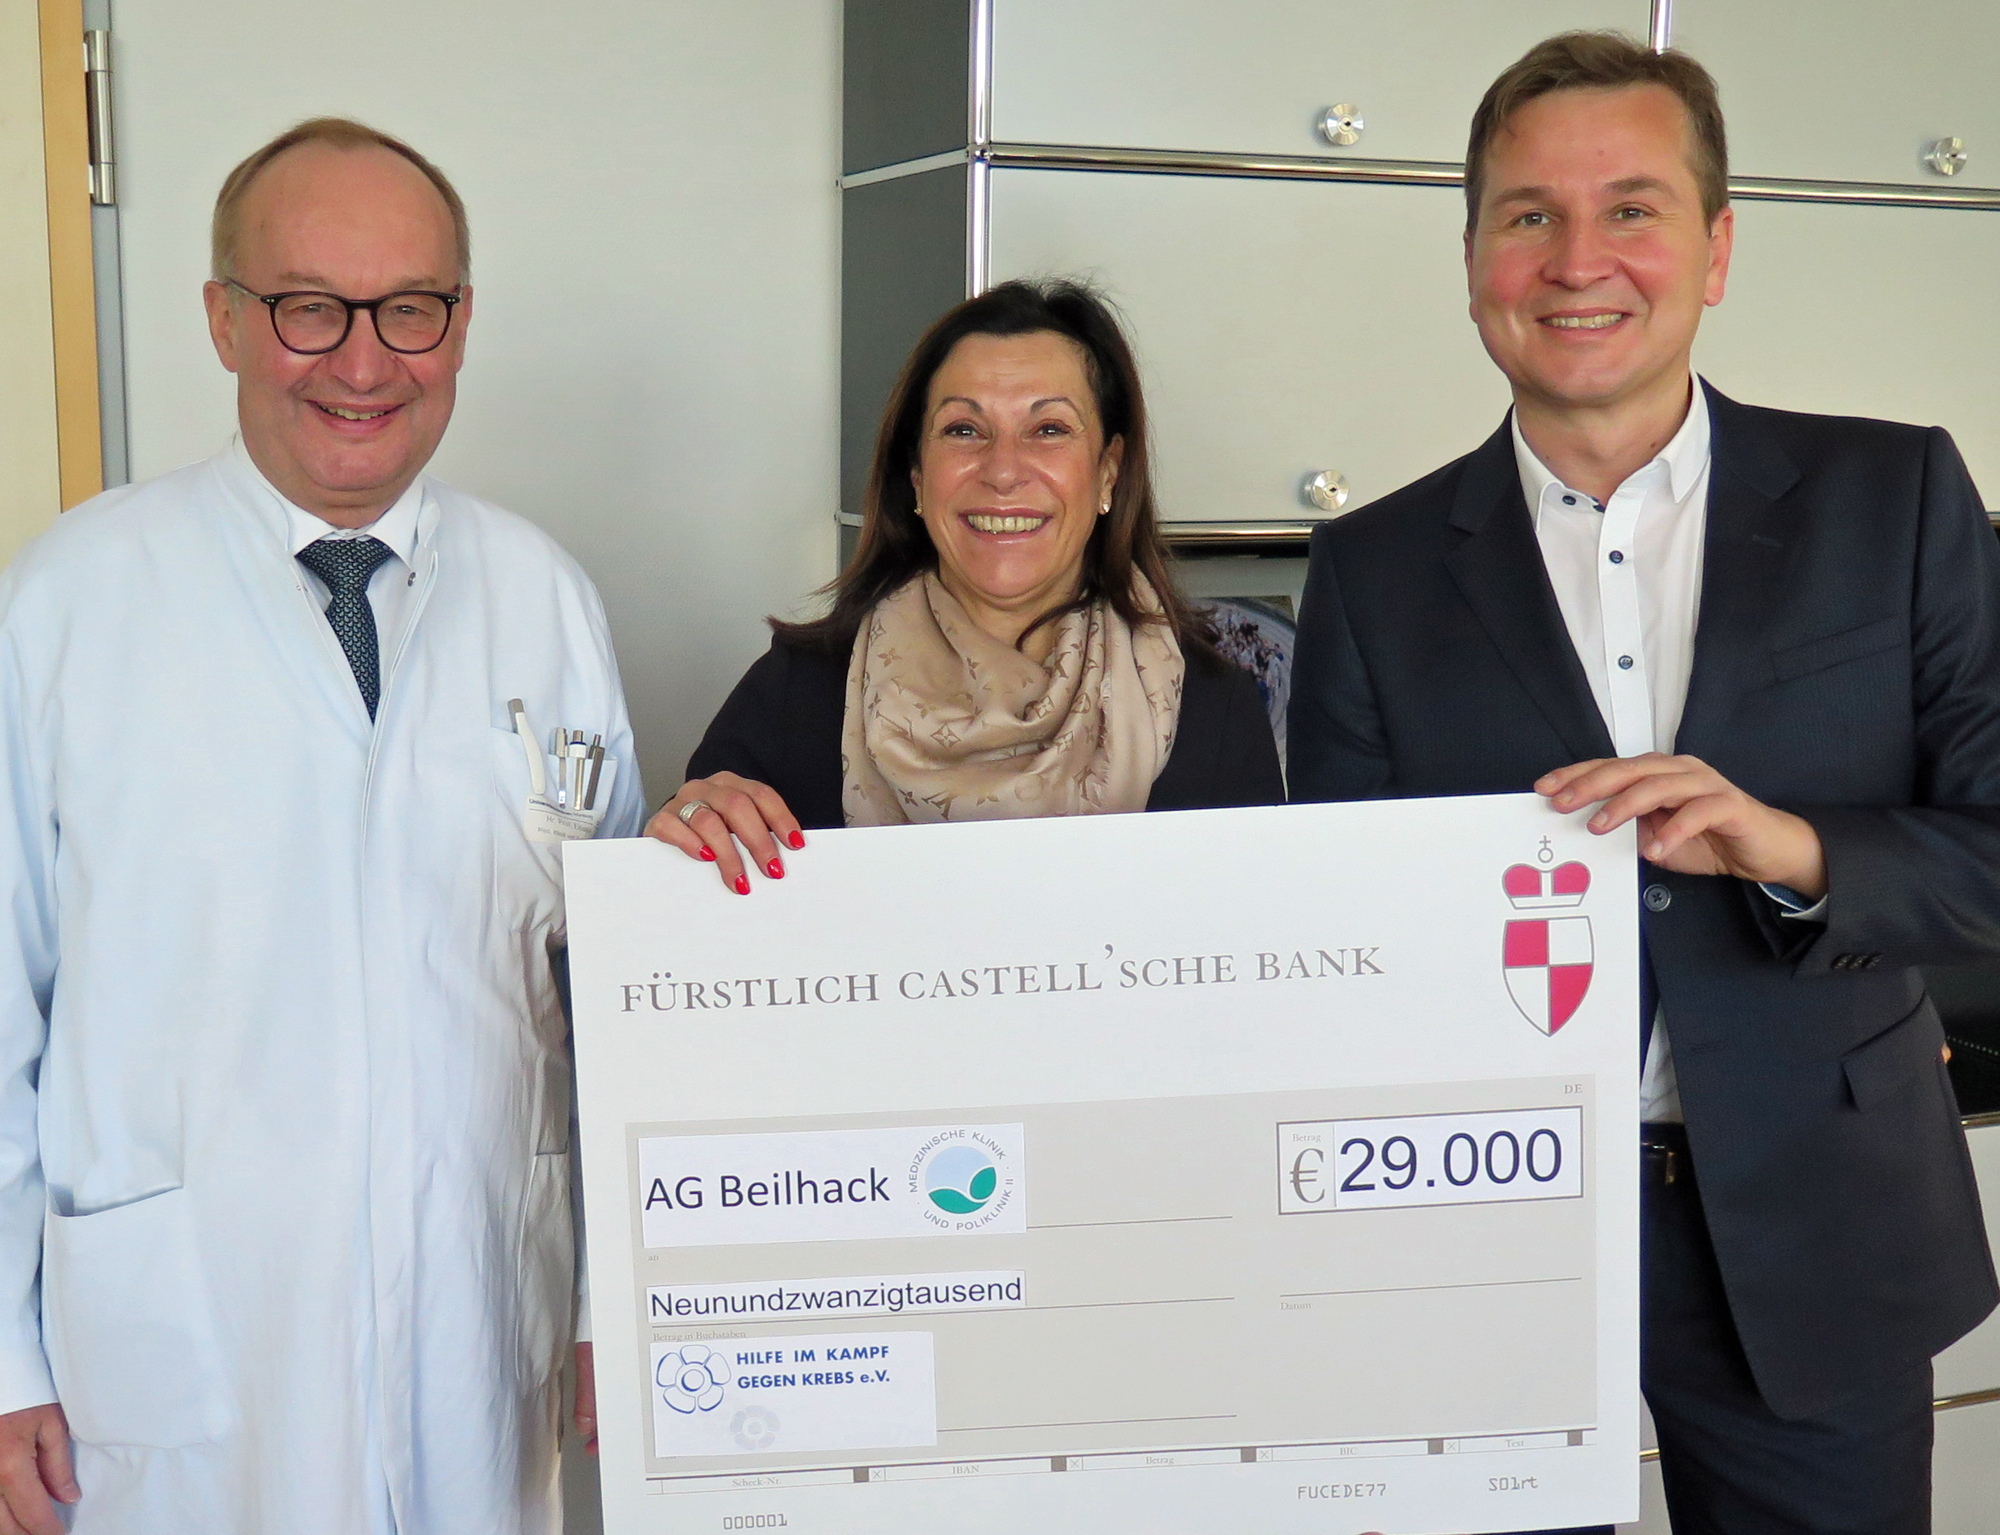 Bei der Spendenübergabe bedankten sich Prof. Dr. Hermann Einsele und Prof. Dr. Andreas Beilhack von der Medizinischen Klinik II des UKW herzlich bei Gabriele Nelkenstock vom Verein „Hilfe im Kampf gegen Krebs“ für die fortgesetzte Förderung.